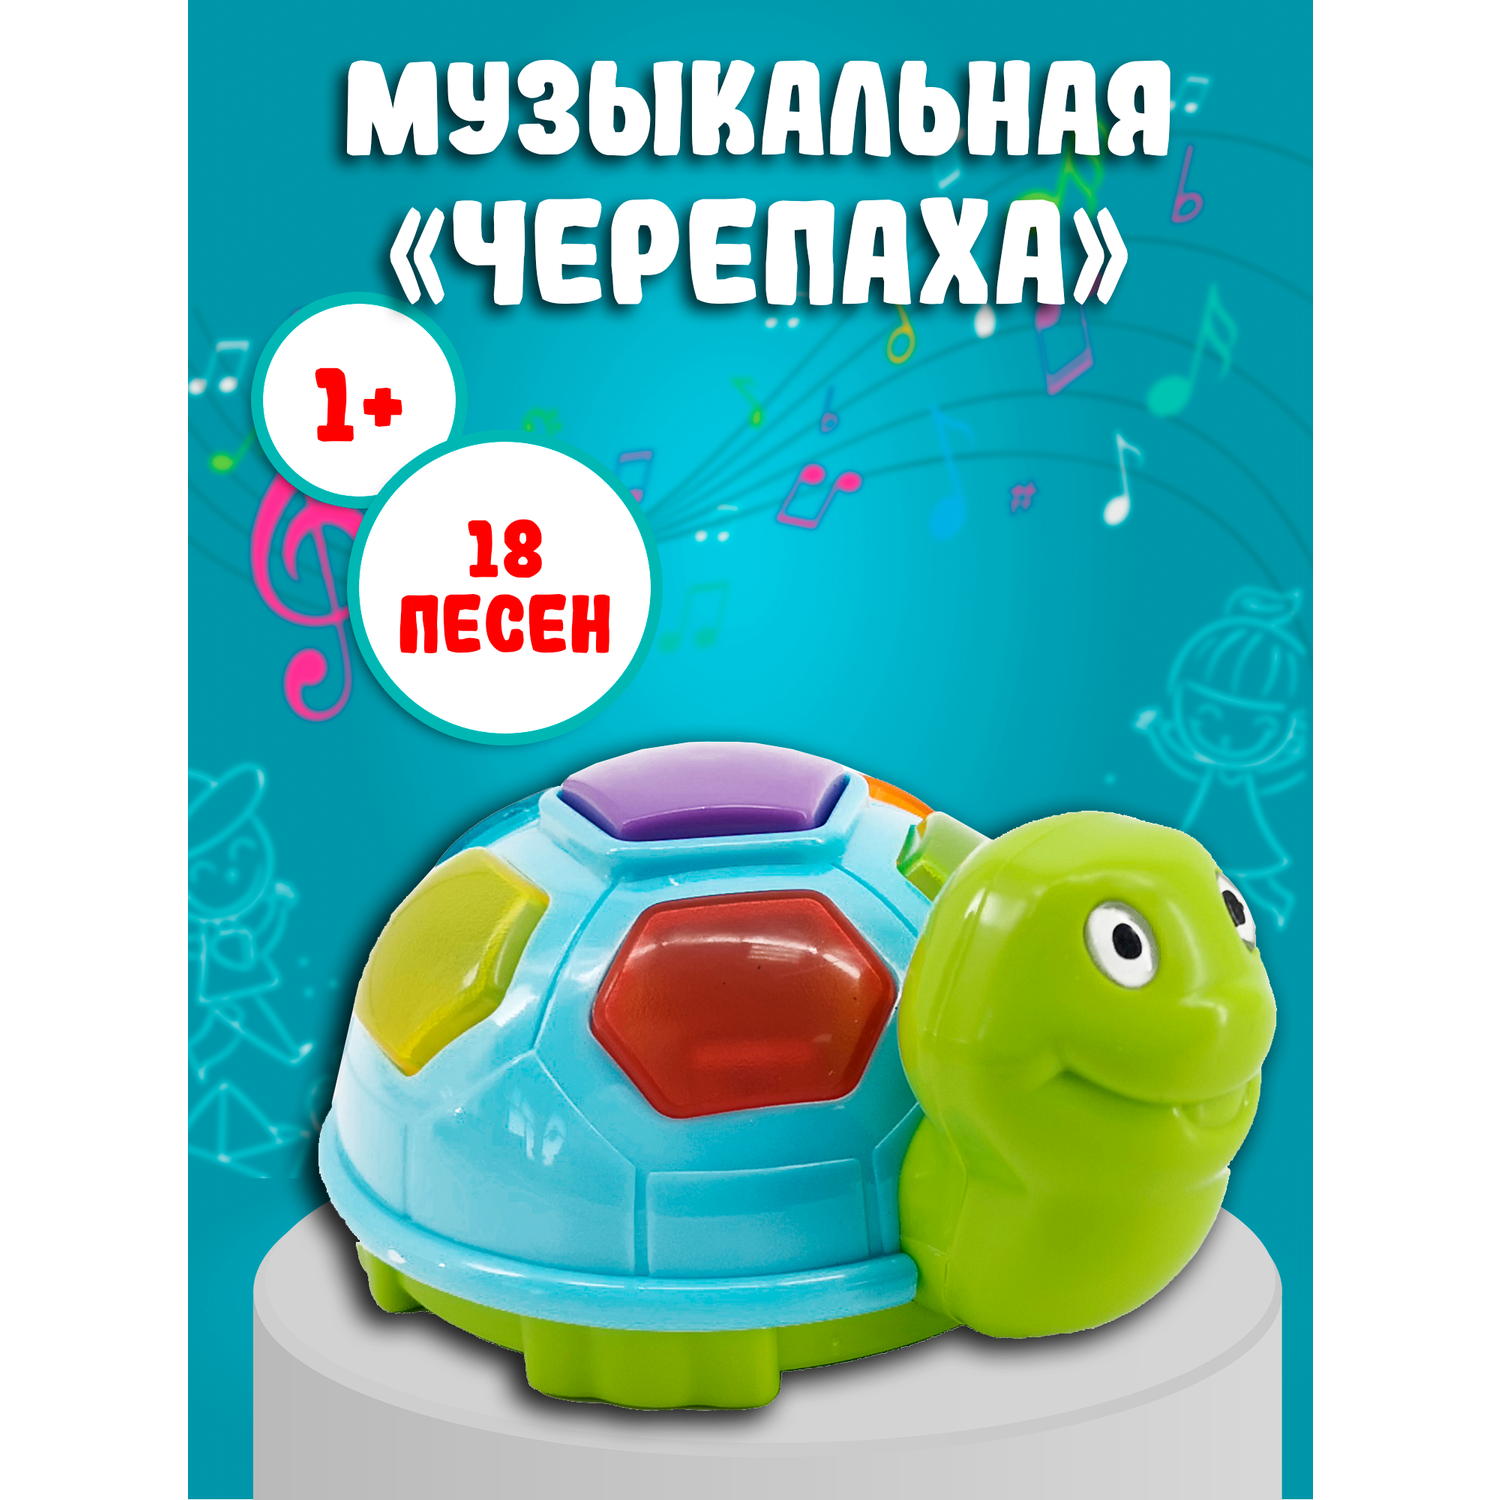 Игрушка развивающая Red box Музыкальная черепаха 23551-1 - фото 3